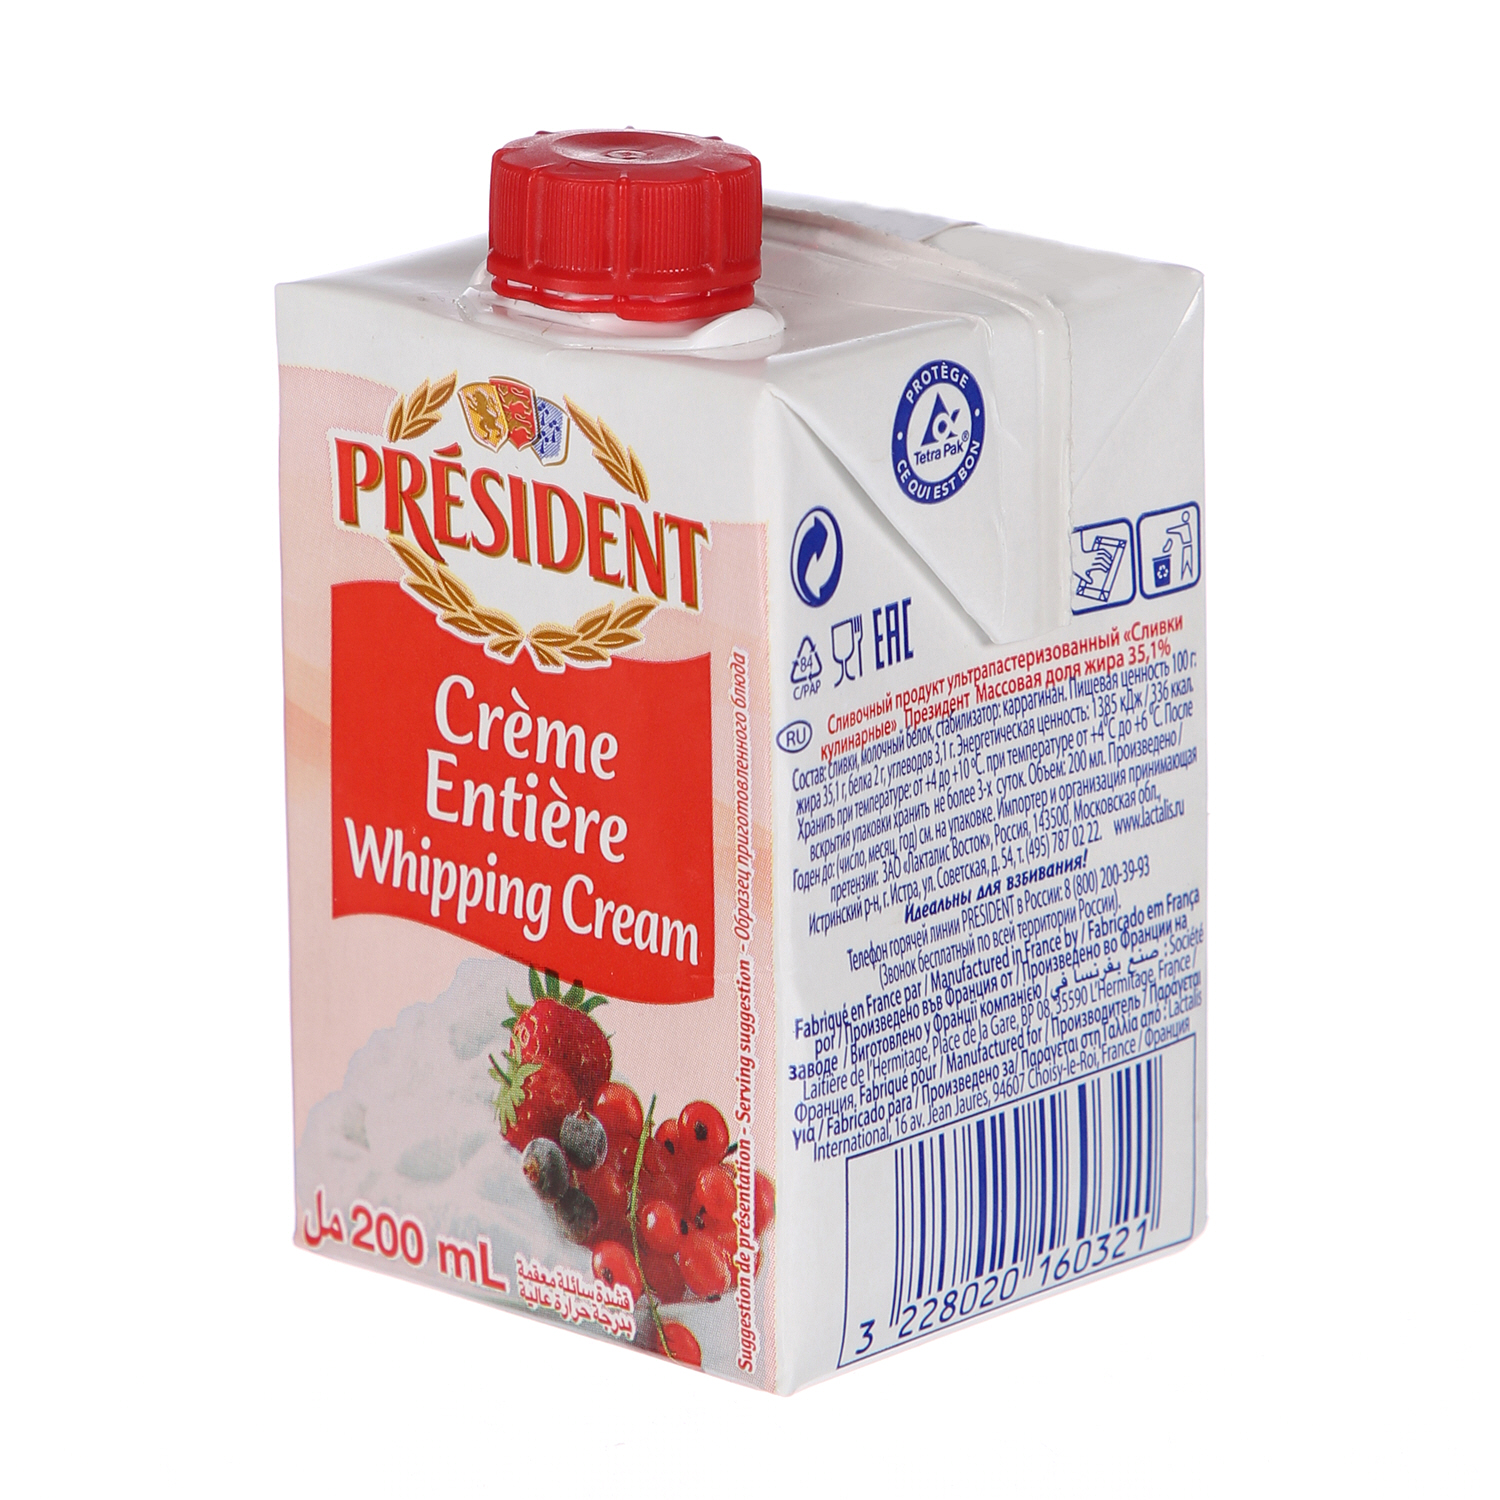 President Whipping Cream 200ml